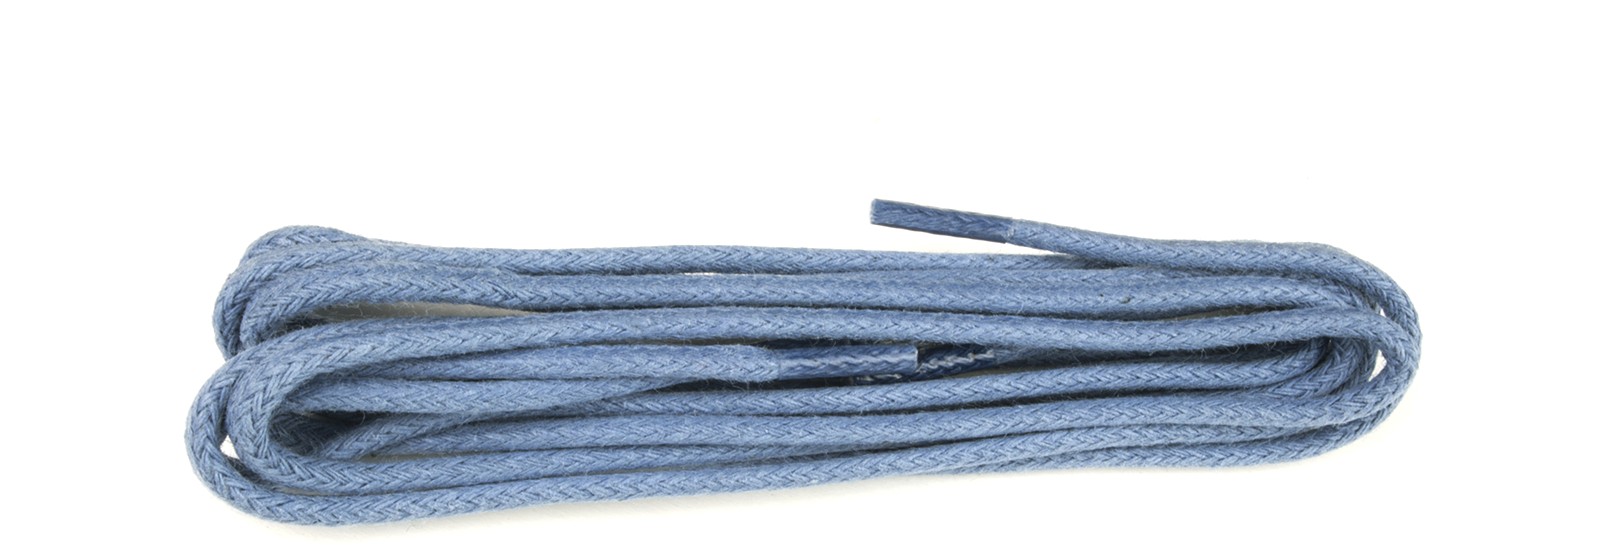 blue trainer laces